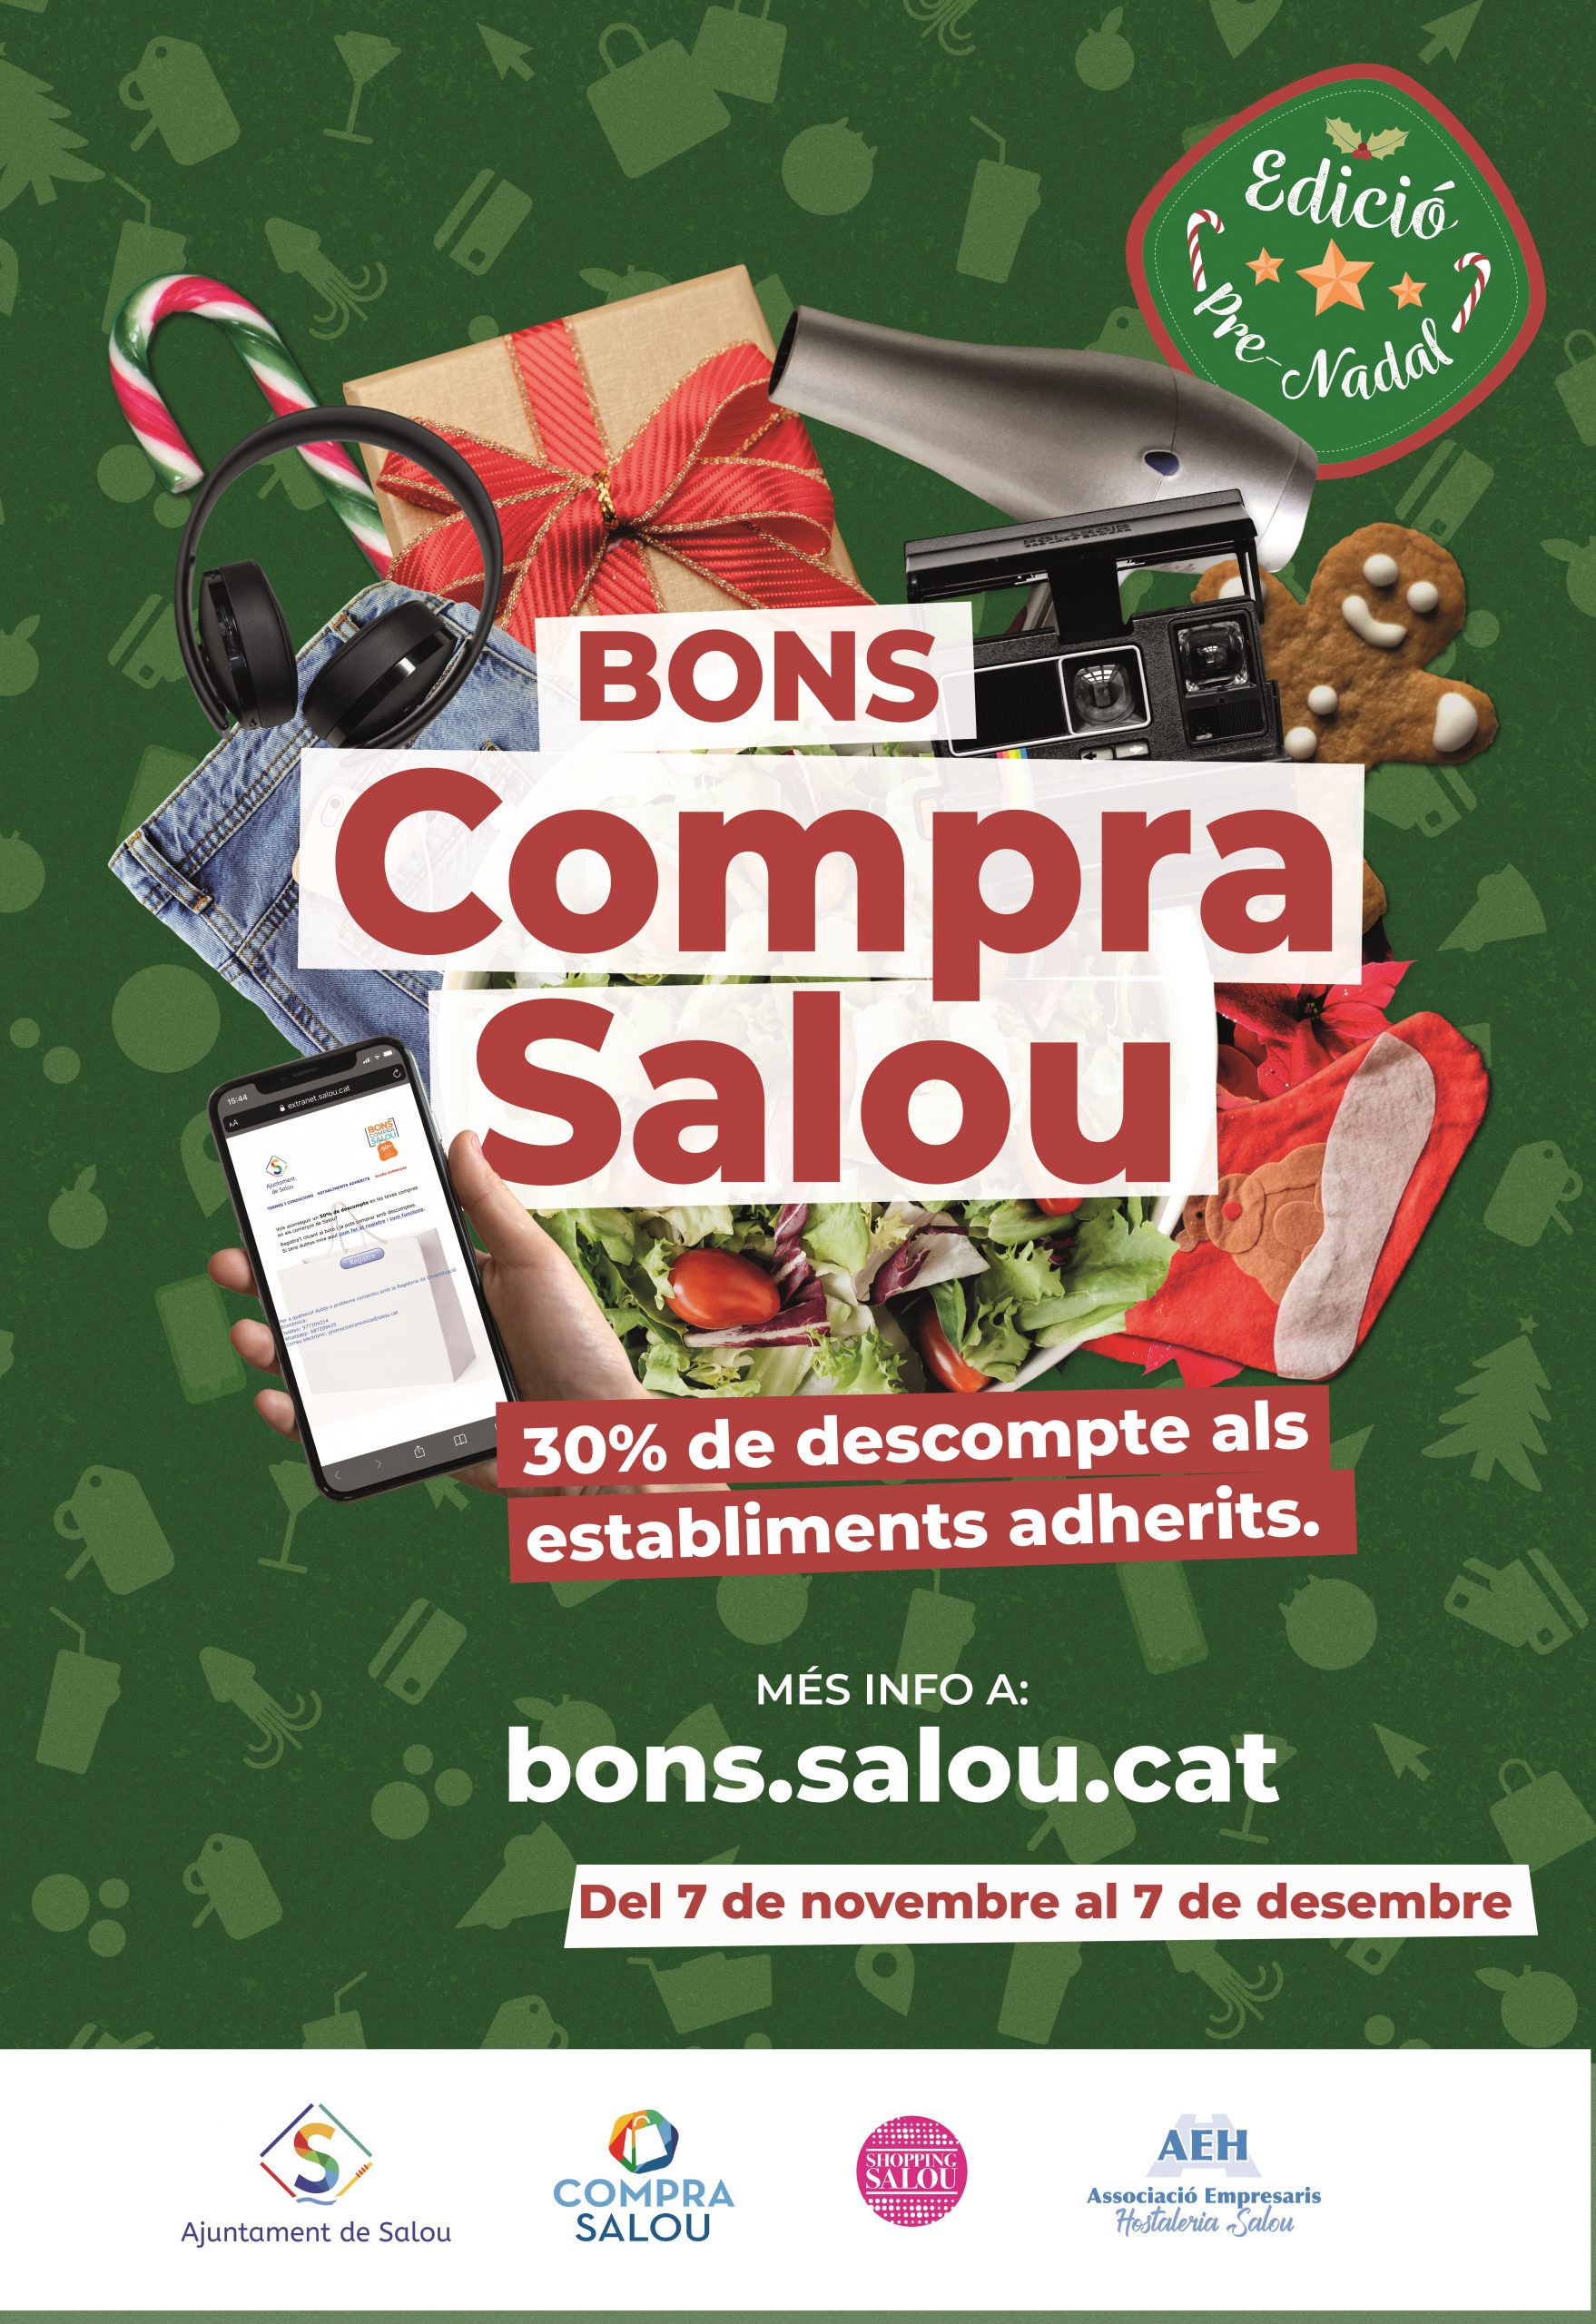 BONS COMPRA SALOU (edició Pre-Nadal)